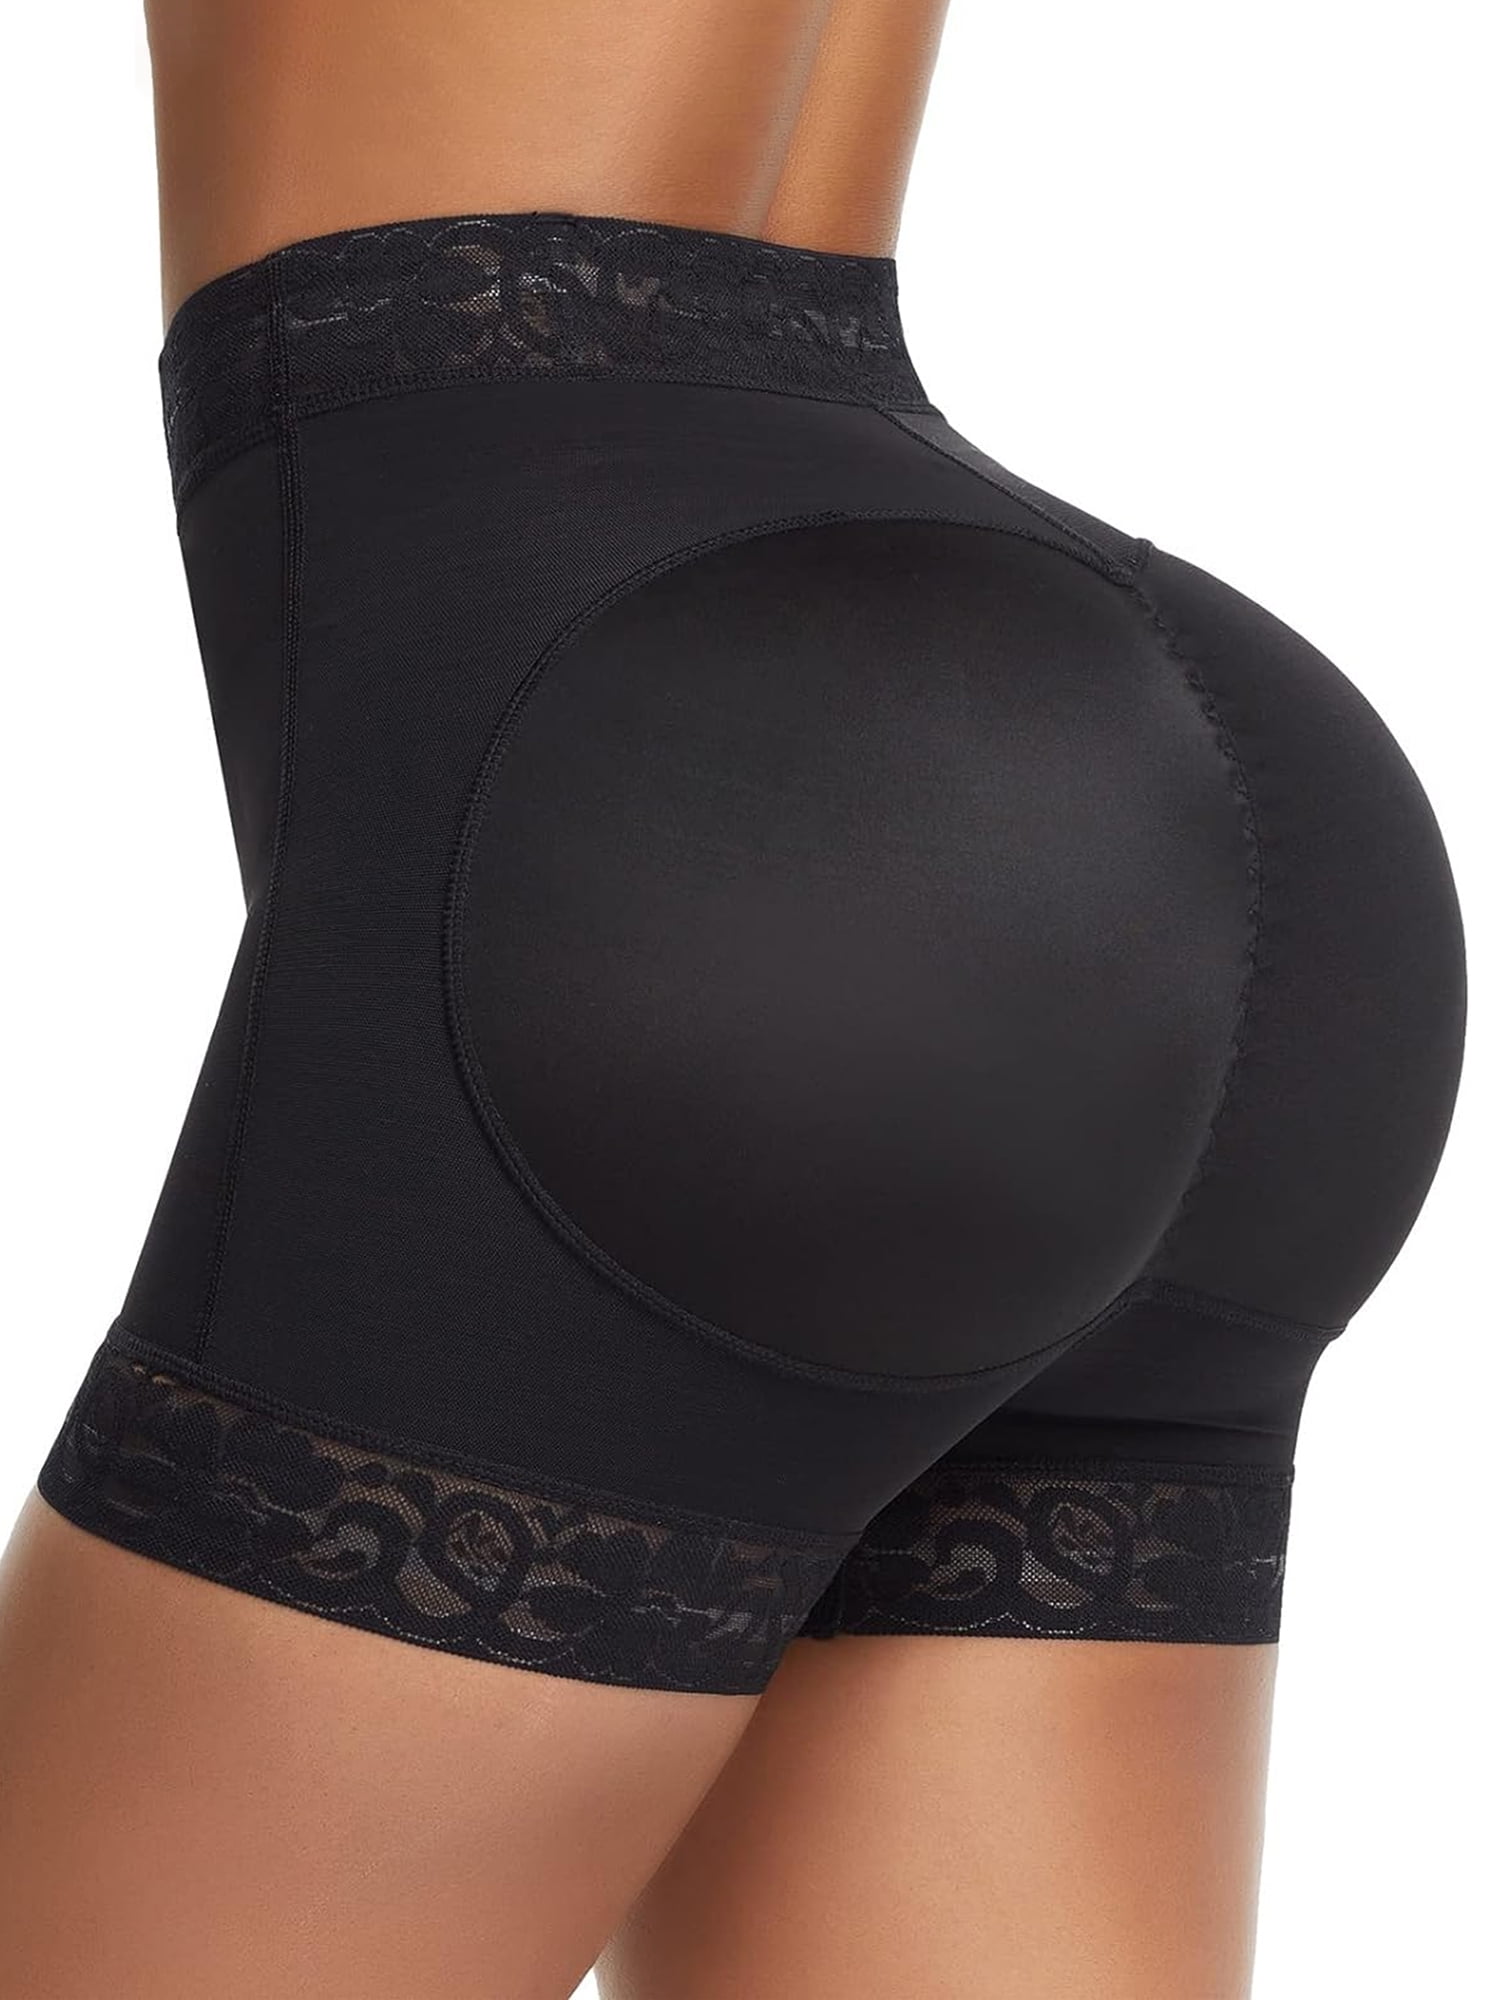 Hanes No-Show Women's Smoothing Brief Underwear, 2-Pack Light Beige 2XL 